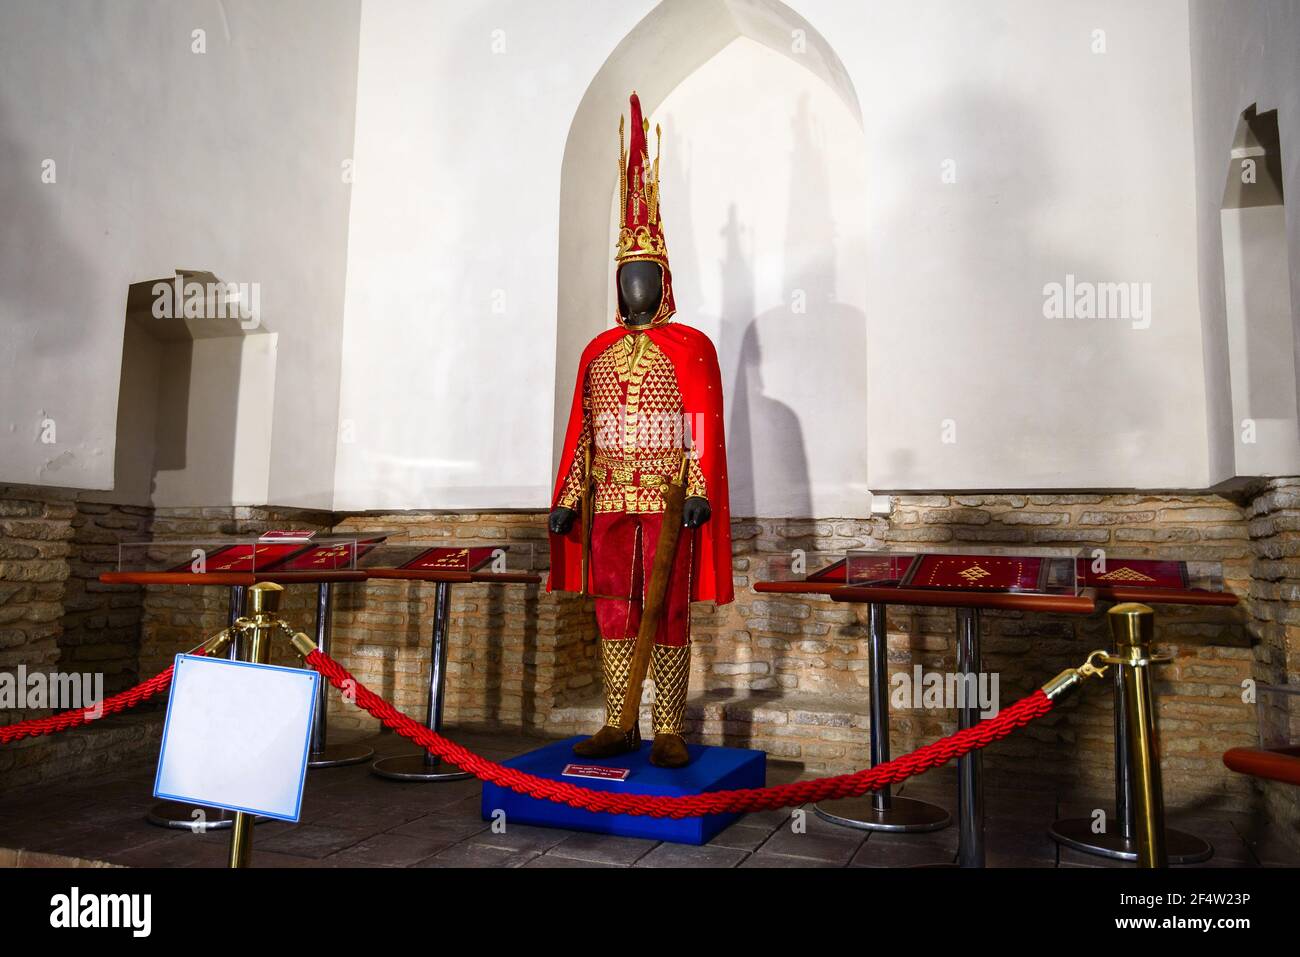 Eine Kopie der Parade Rüstung Saka König, bekannt als der "Issyk Golden man", V-VI Jahrhundert v. Chr../Altyn Adam – die Symbole von Kasachstan/Turkestan, Kasachstan - Stockfoto